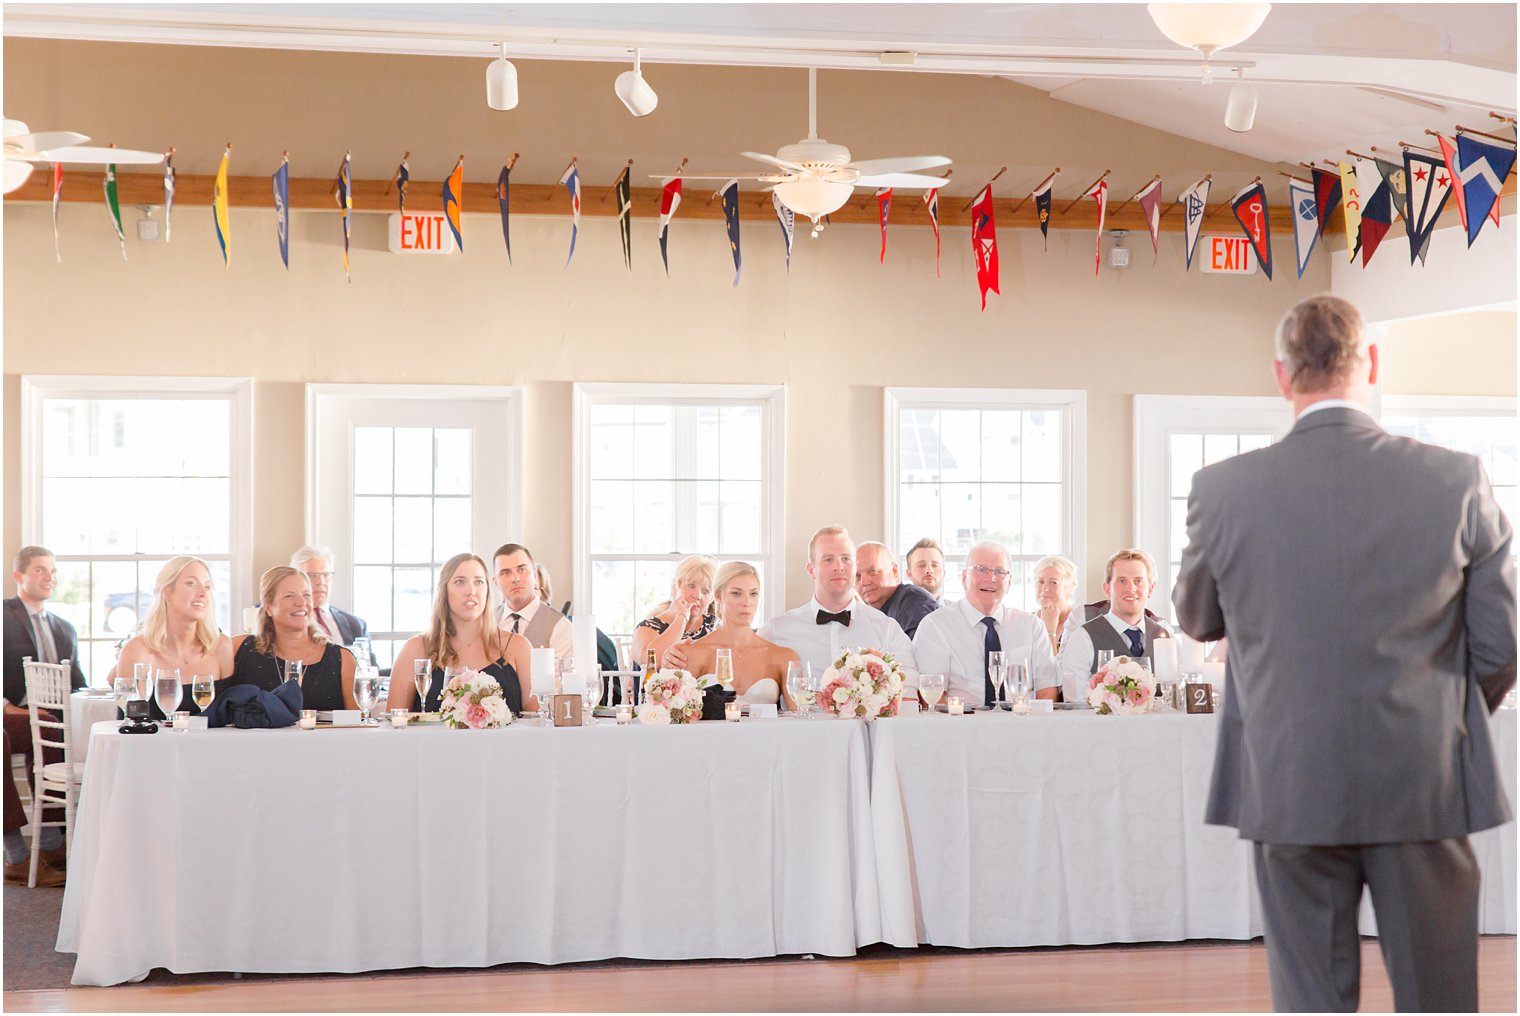 Wedding reception at Brant Beach Yacht Club